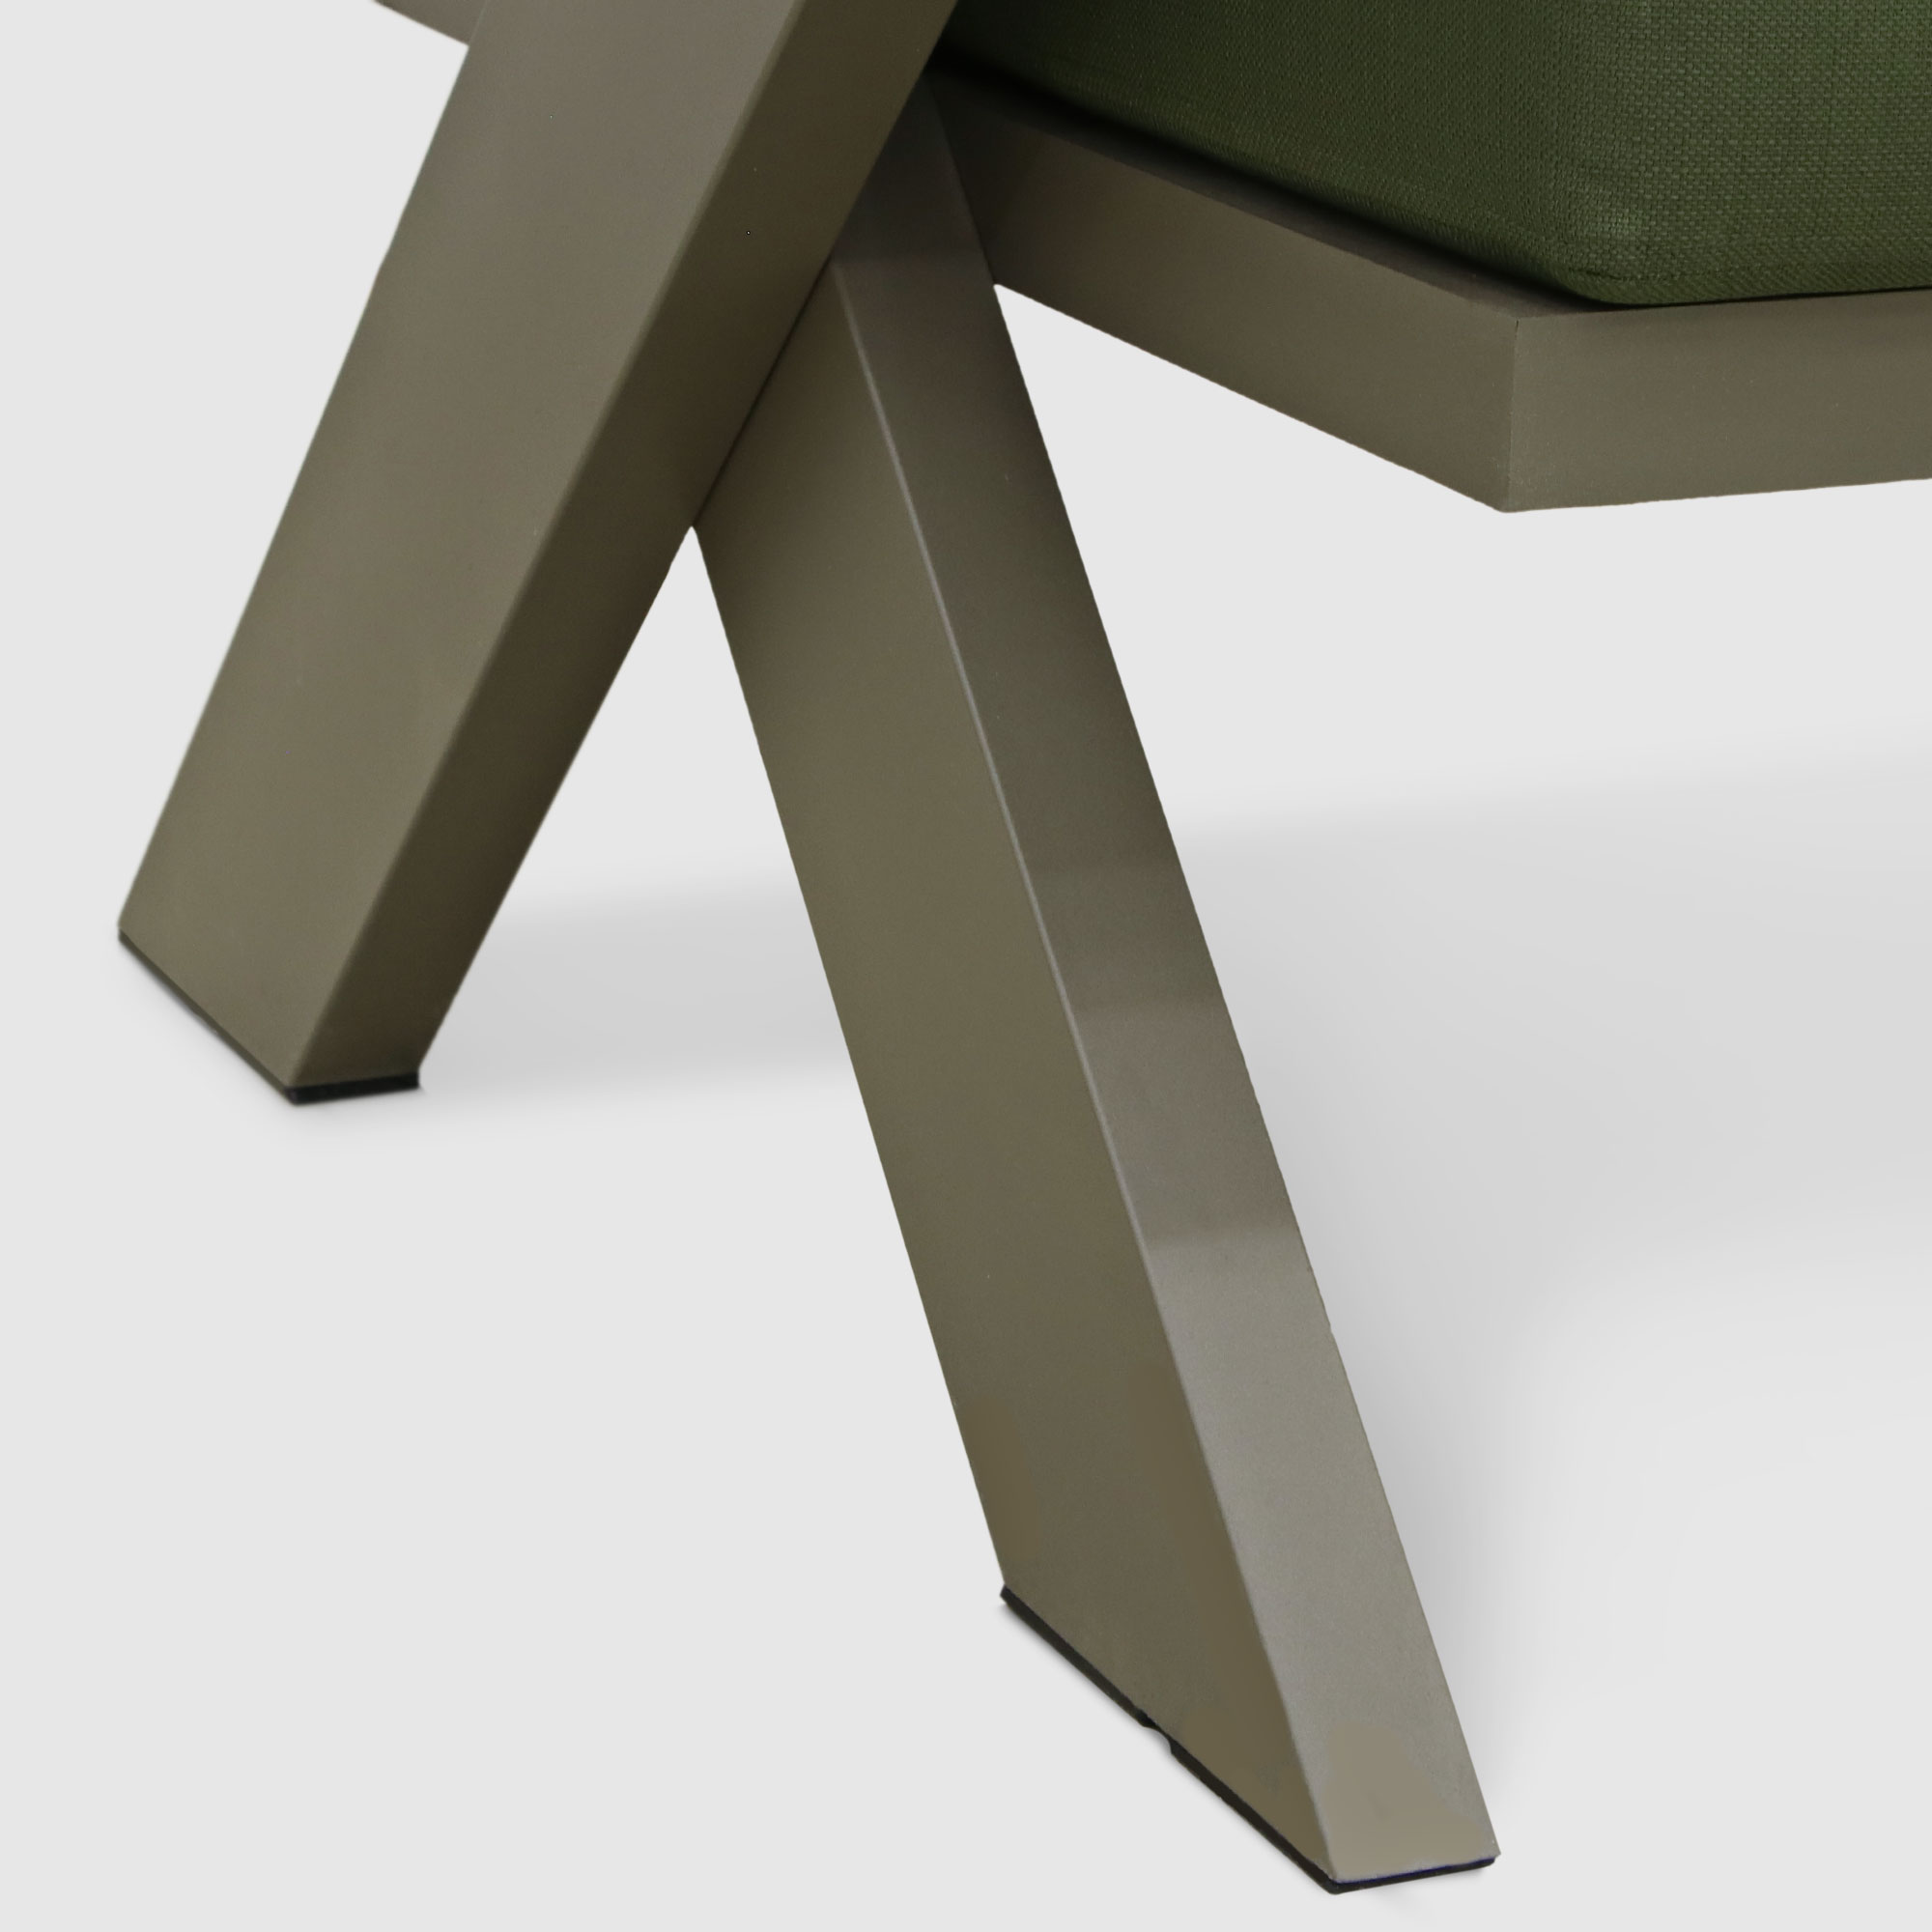 Комплект мебели Emek garden Toledo зеленый 4 предмета, цвет оливковый, размер 170х80х90 - фото 14